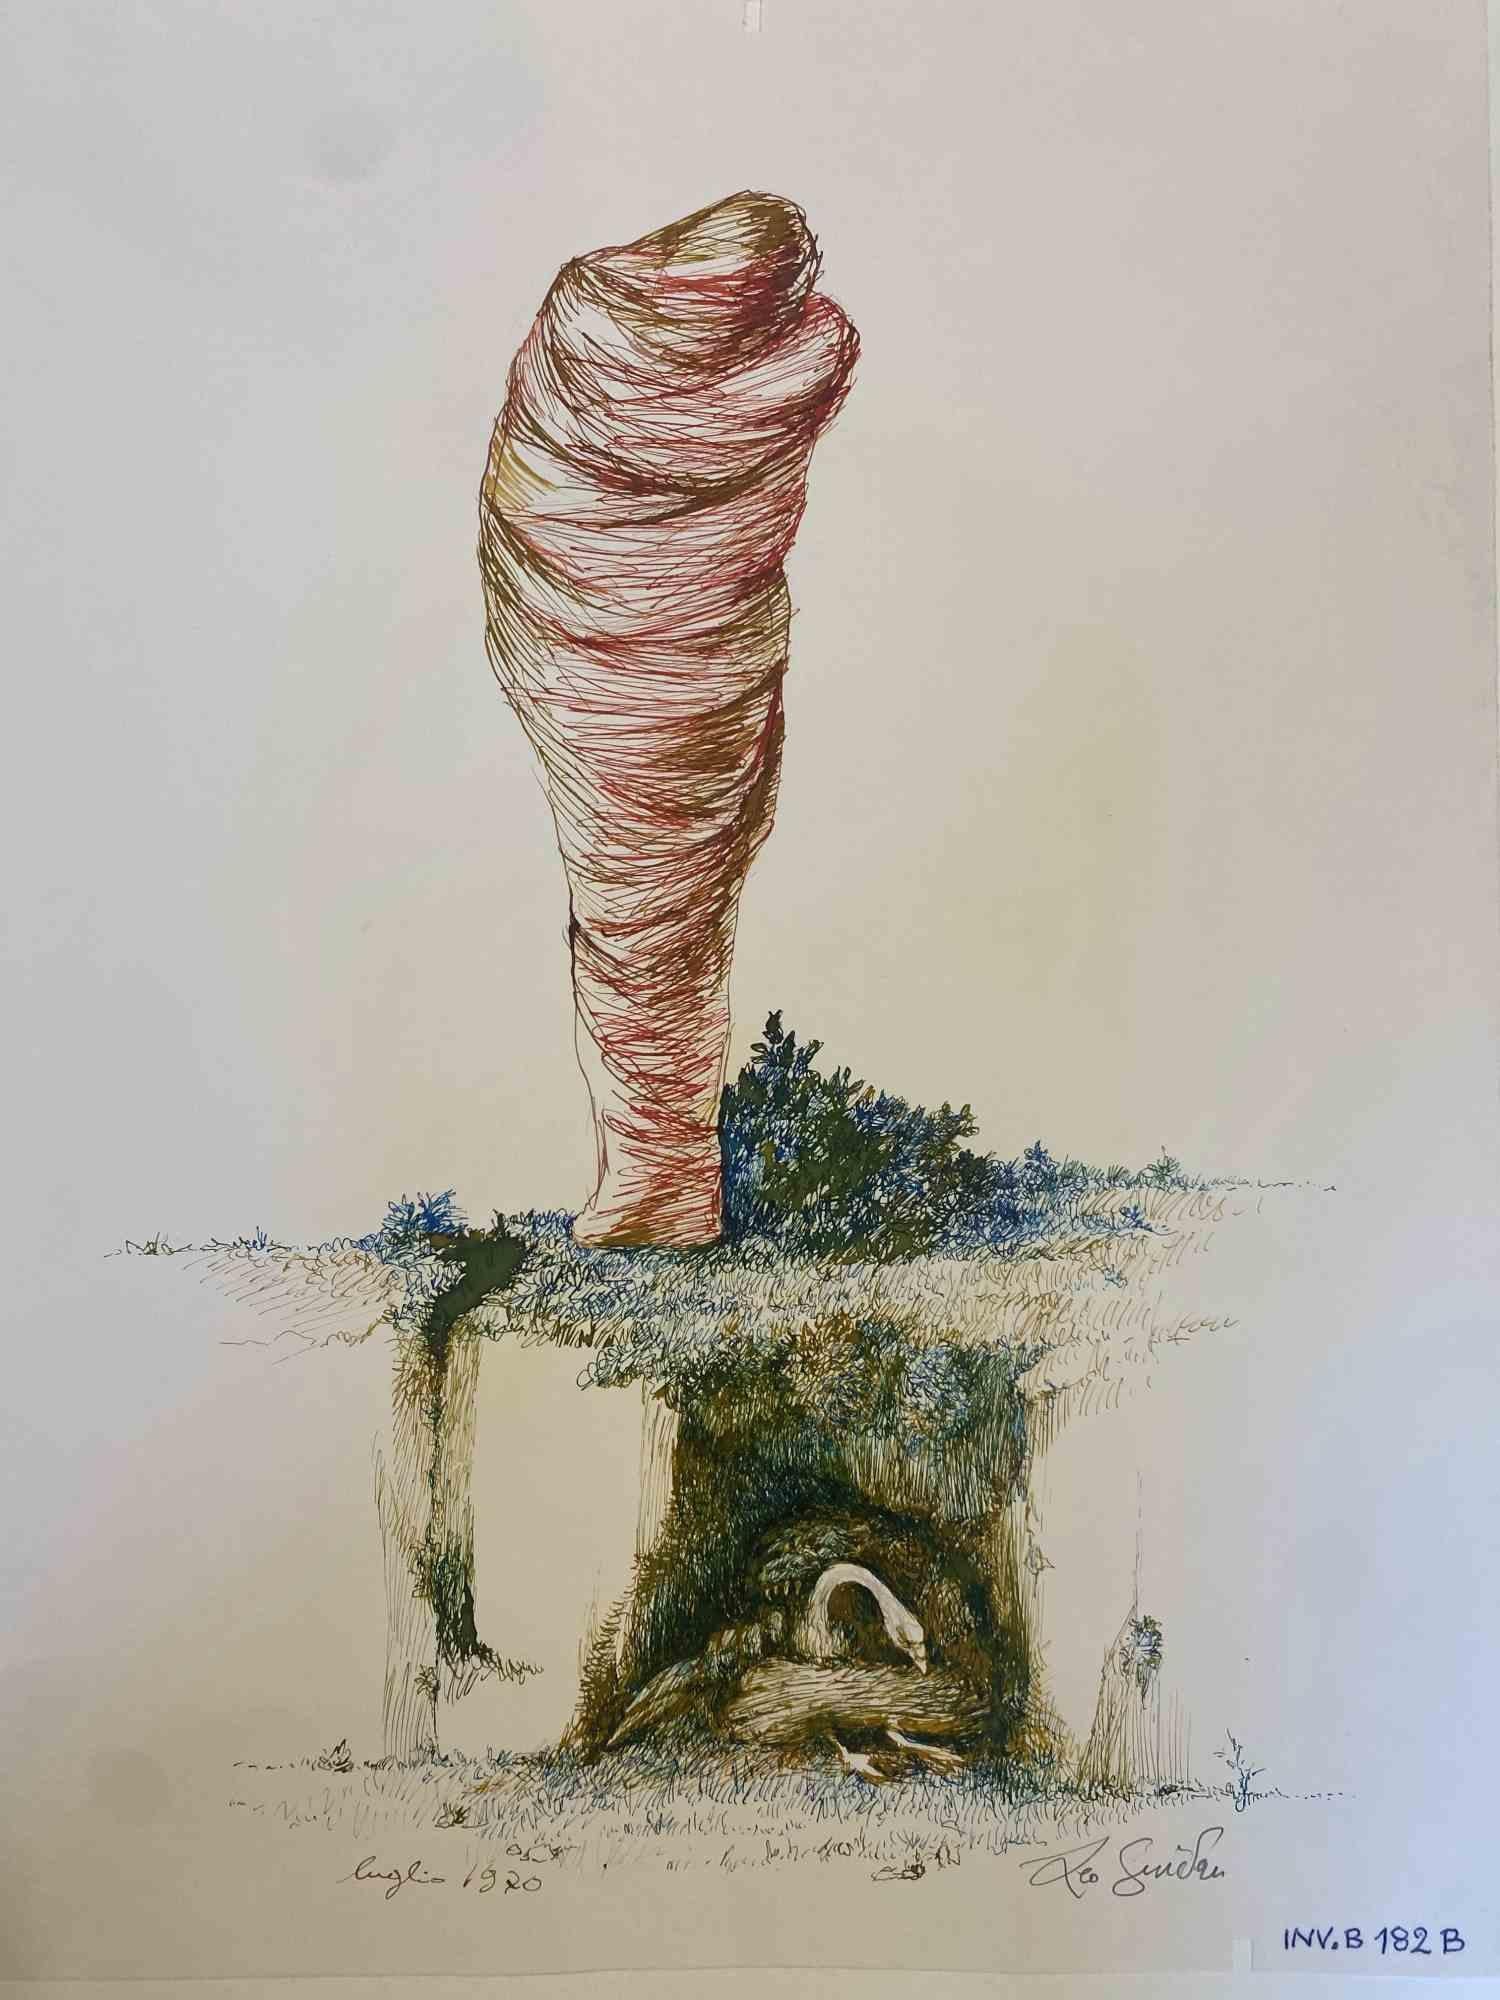 Mumifizierter Mann ist ein Original-Kunstwerk realisiert  1970 von dem italienischen zeitgenössischen Künstler  Leo Guida  (1992 - 2017).

Originalzeichnung mit Tusche und Aquarellfarben auf elfenbeinfarbenem Papier, auf Karton geklebt (50 x 35